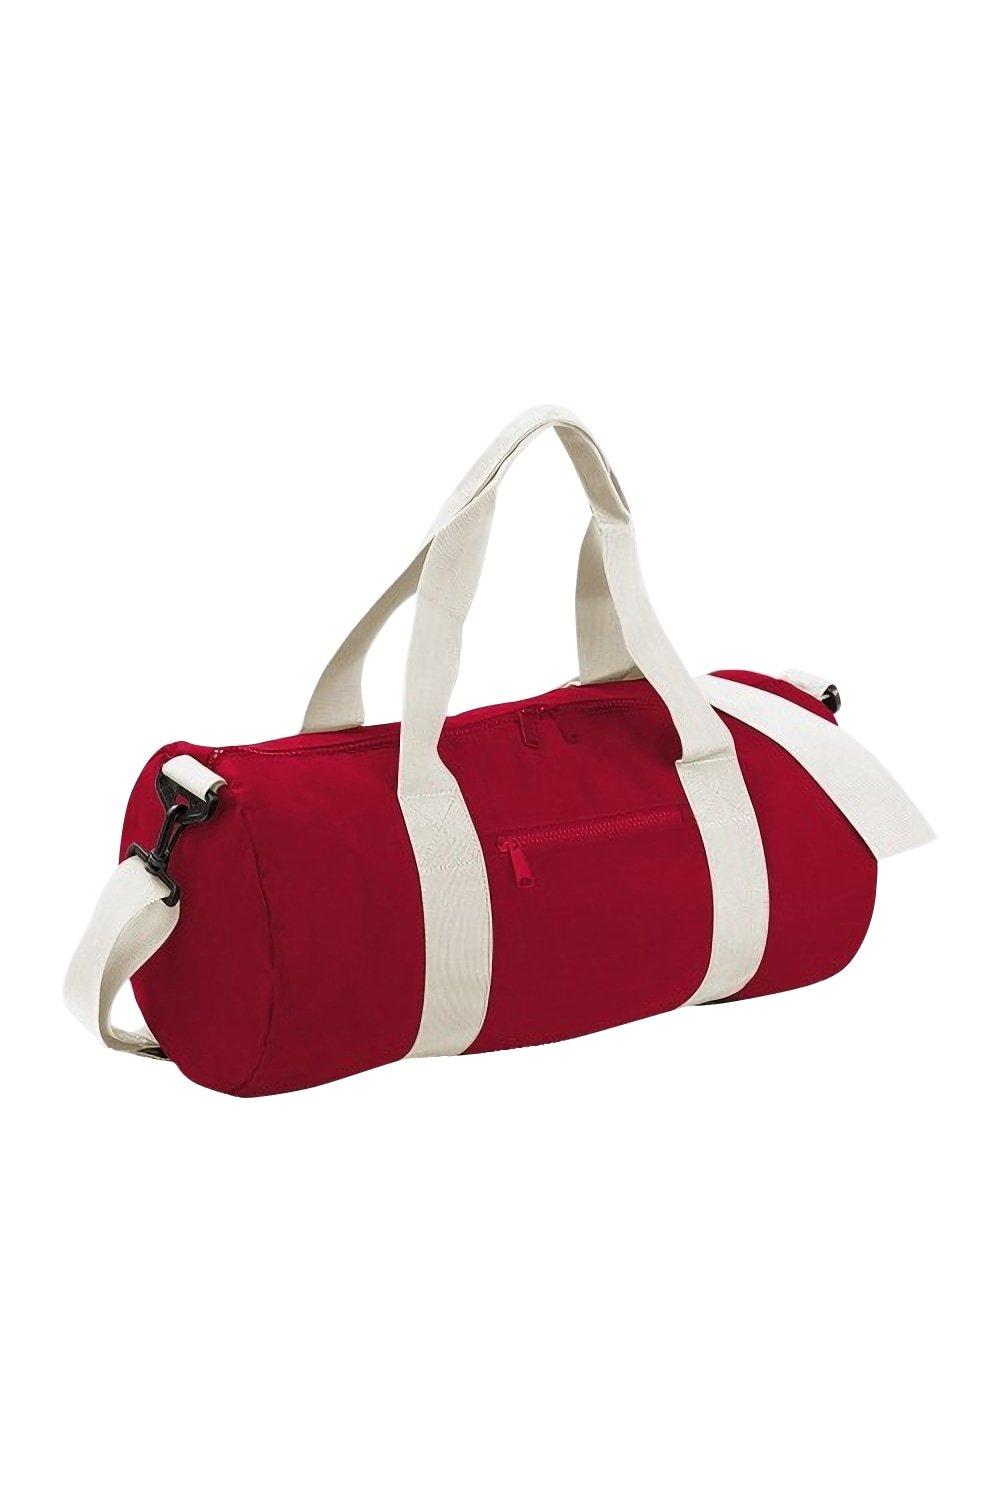 Обычная университетская бочка/спортивная сумка (20 литров) (2 шт. в упаковке) Bagbase, красный cумка на пояс тачки 25 x 6 x 13 см отдел на молнии без подклада disney в наборе 1шт